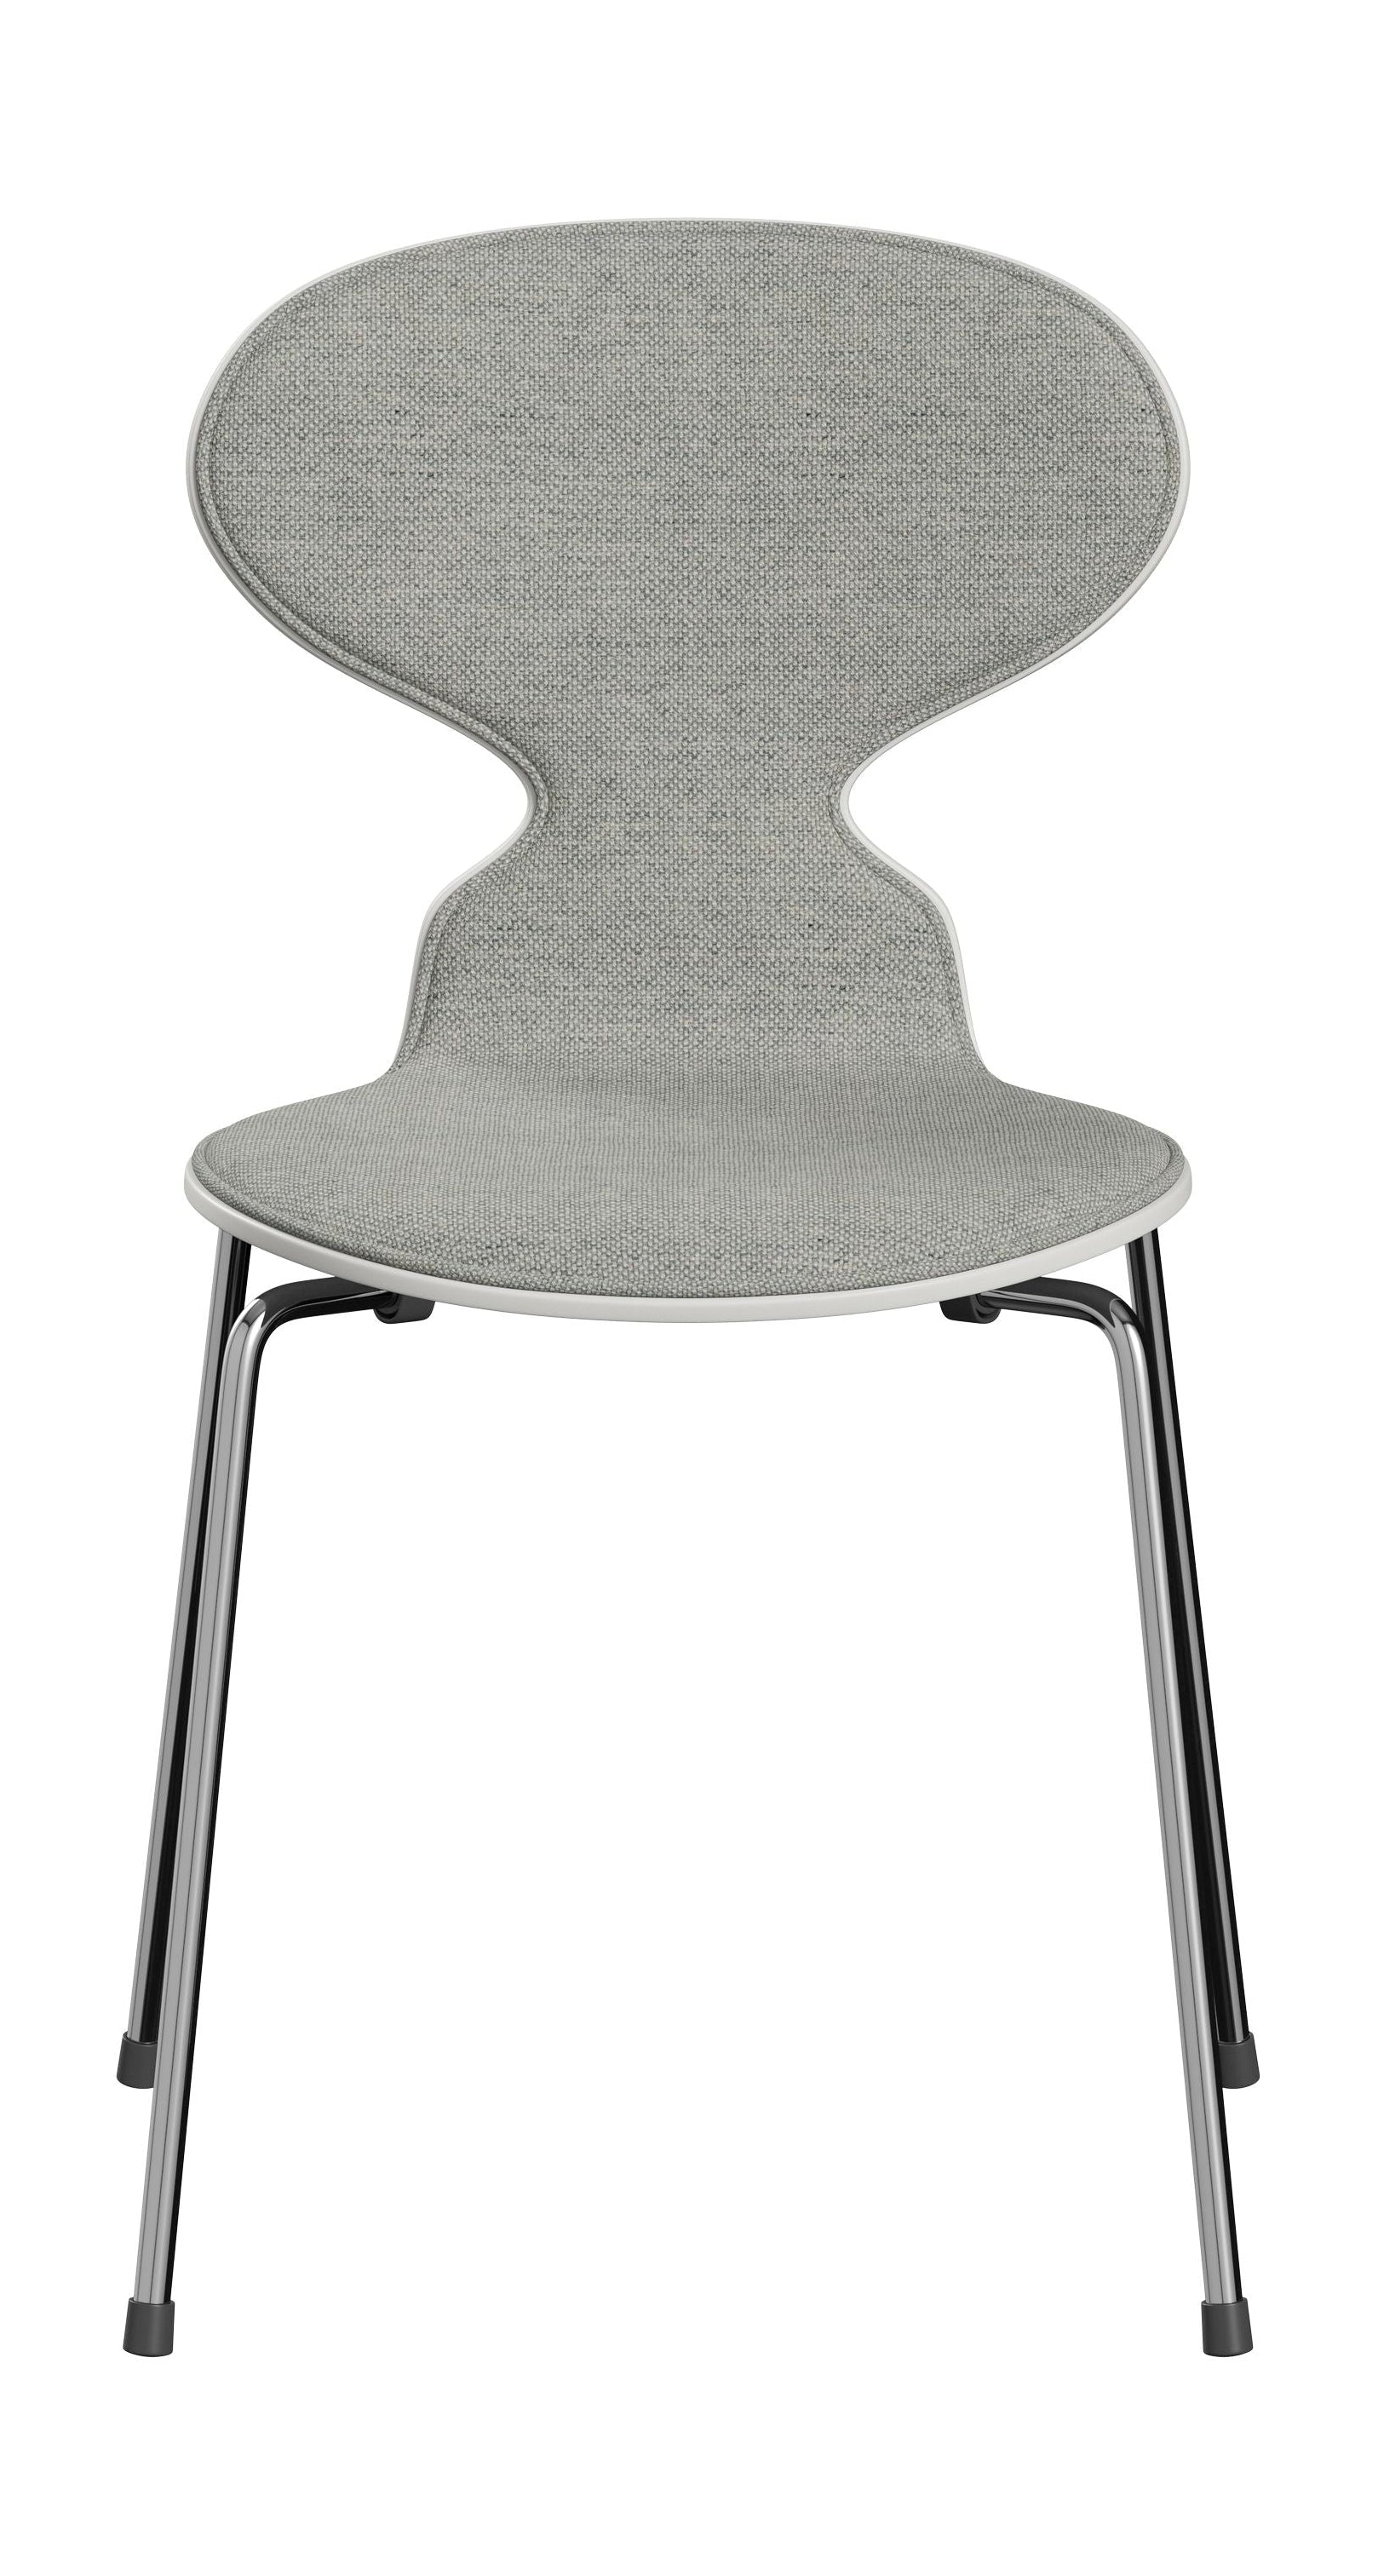 Fritz Hansen 3101 Ant tuolin etuverhoilu, kuori: lakattu viilu valkoinen, verhoilu: Hallingdal tekstiili valkoinen/harmaa, pohja: Teräs/kromi